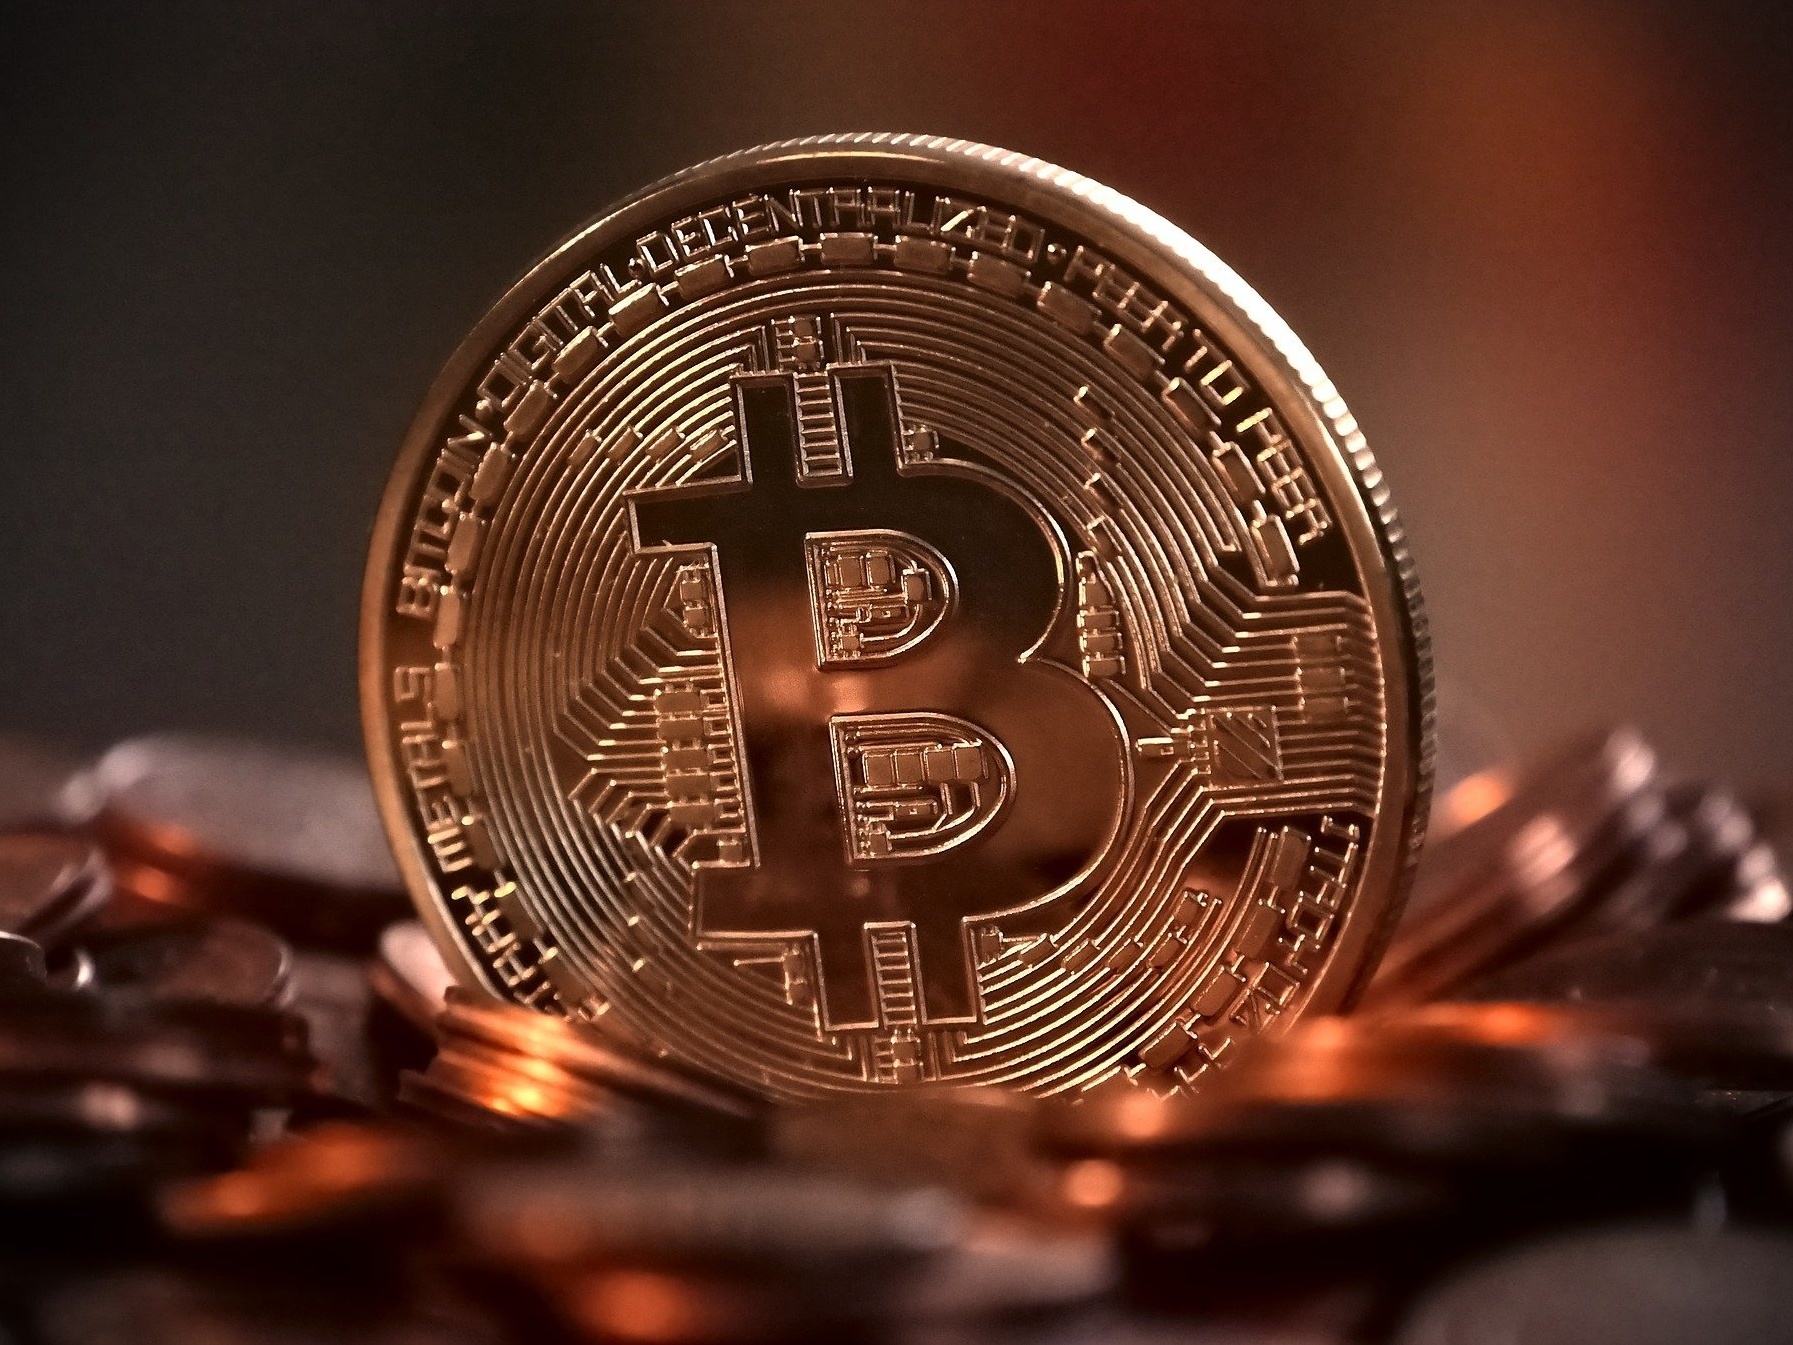 Existe retorno garantido com bitcoin? Veja como fugir de golpes